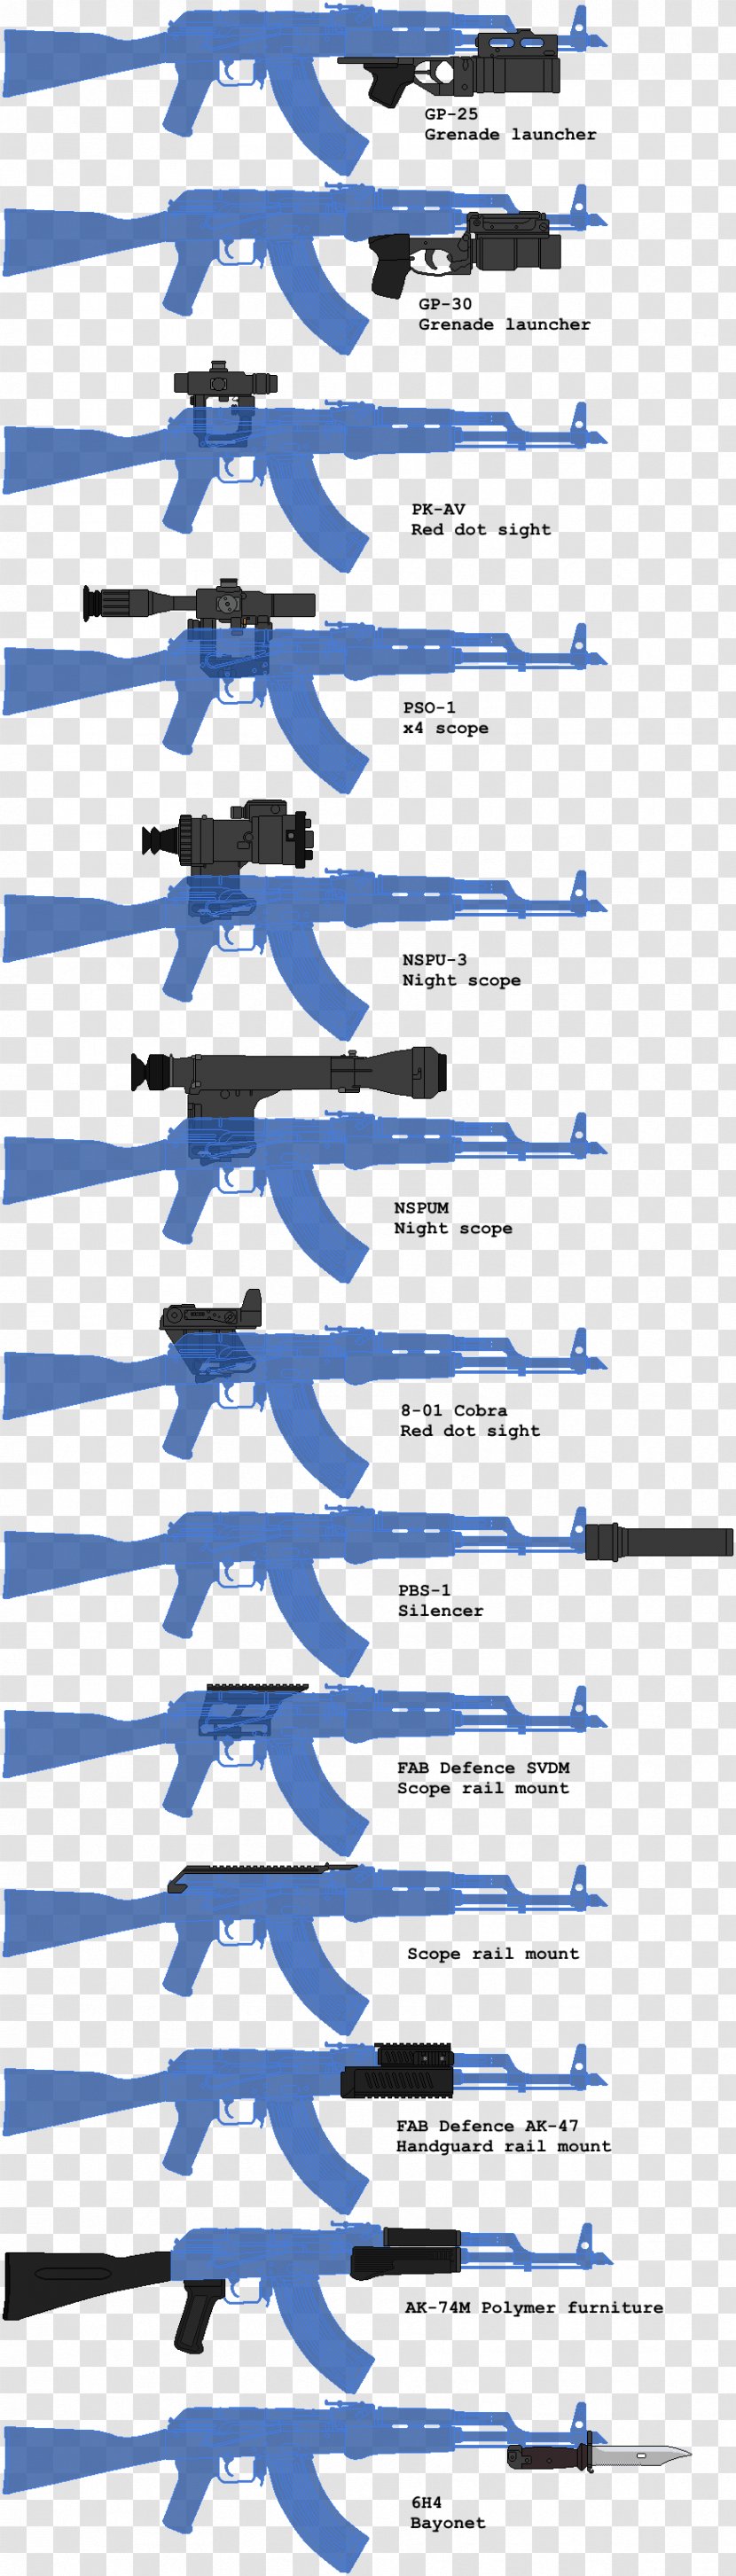 AKM GP-25 AK-47 PBS-1 Silencer COBARA - Akm - Ak 47 Transparent PNG